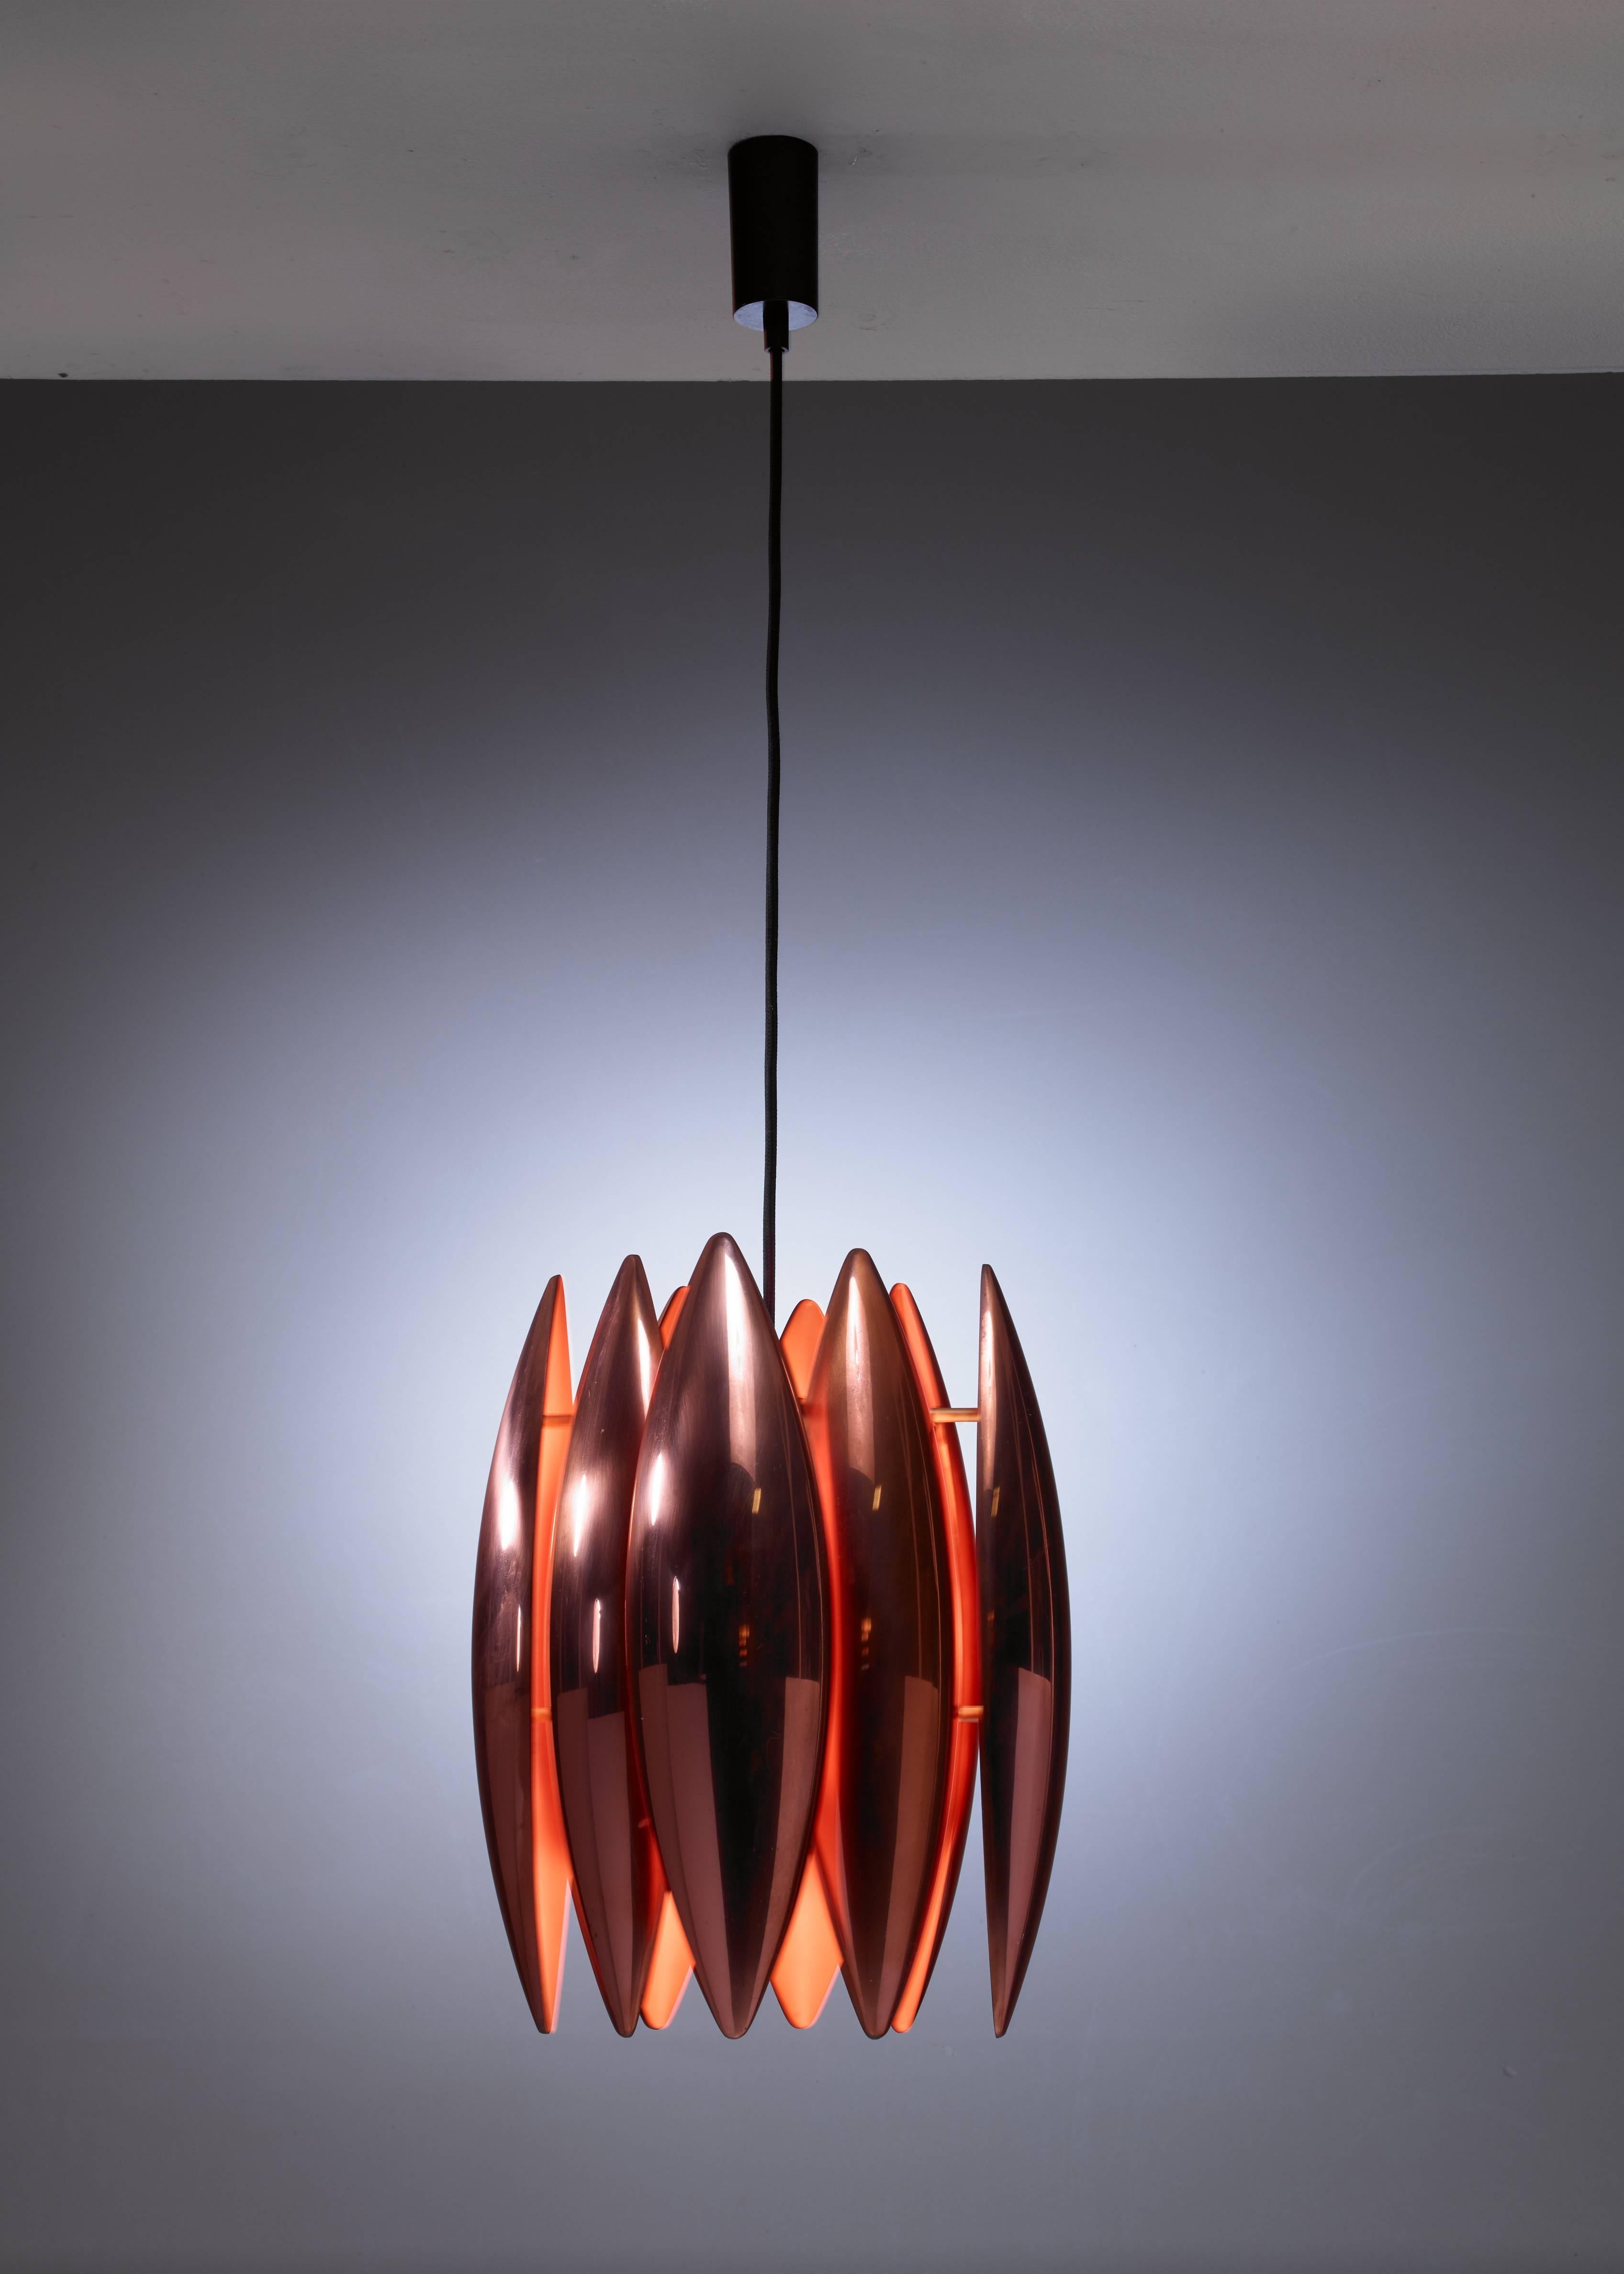 A Jo Hammerborg model Kastor pendant lamp, made of eight copper parts, by Fog & Mørup, Denmark.